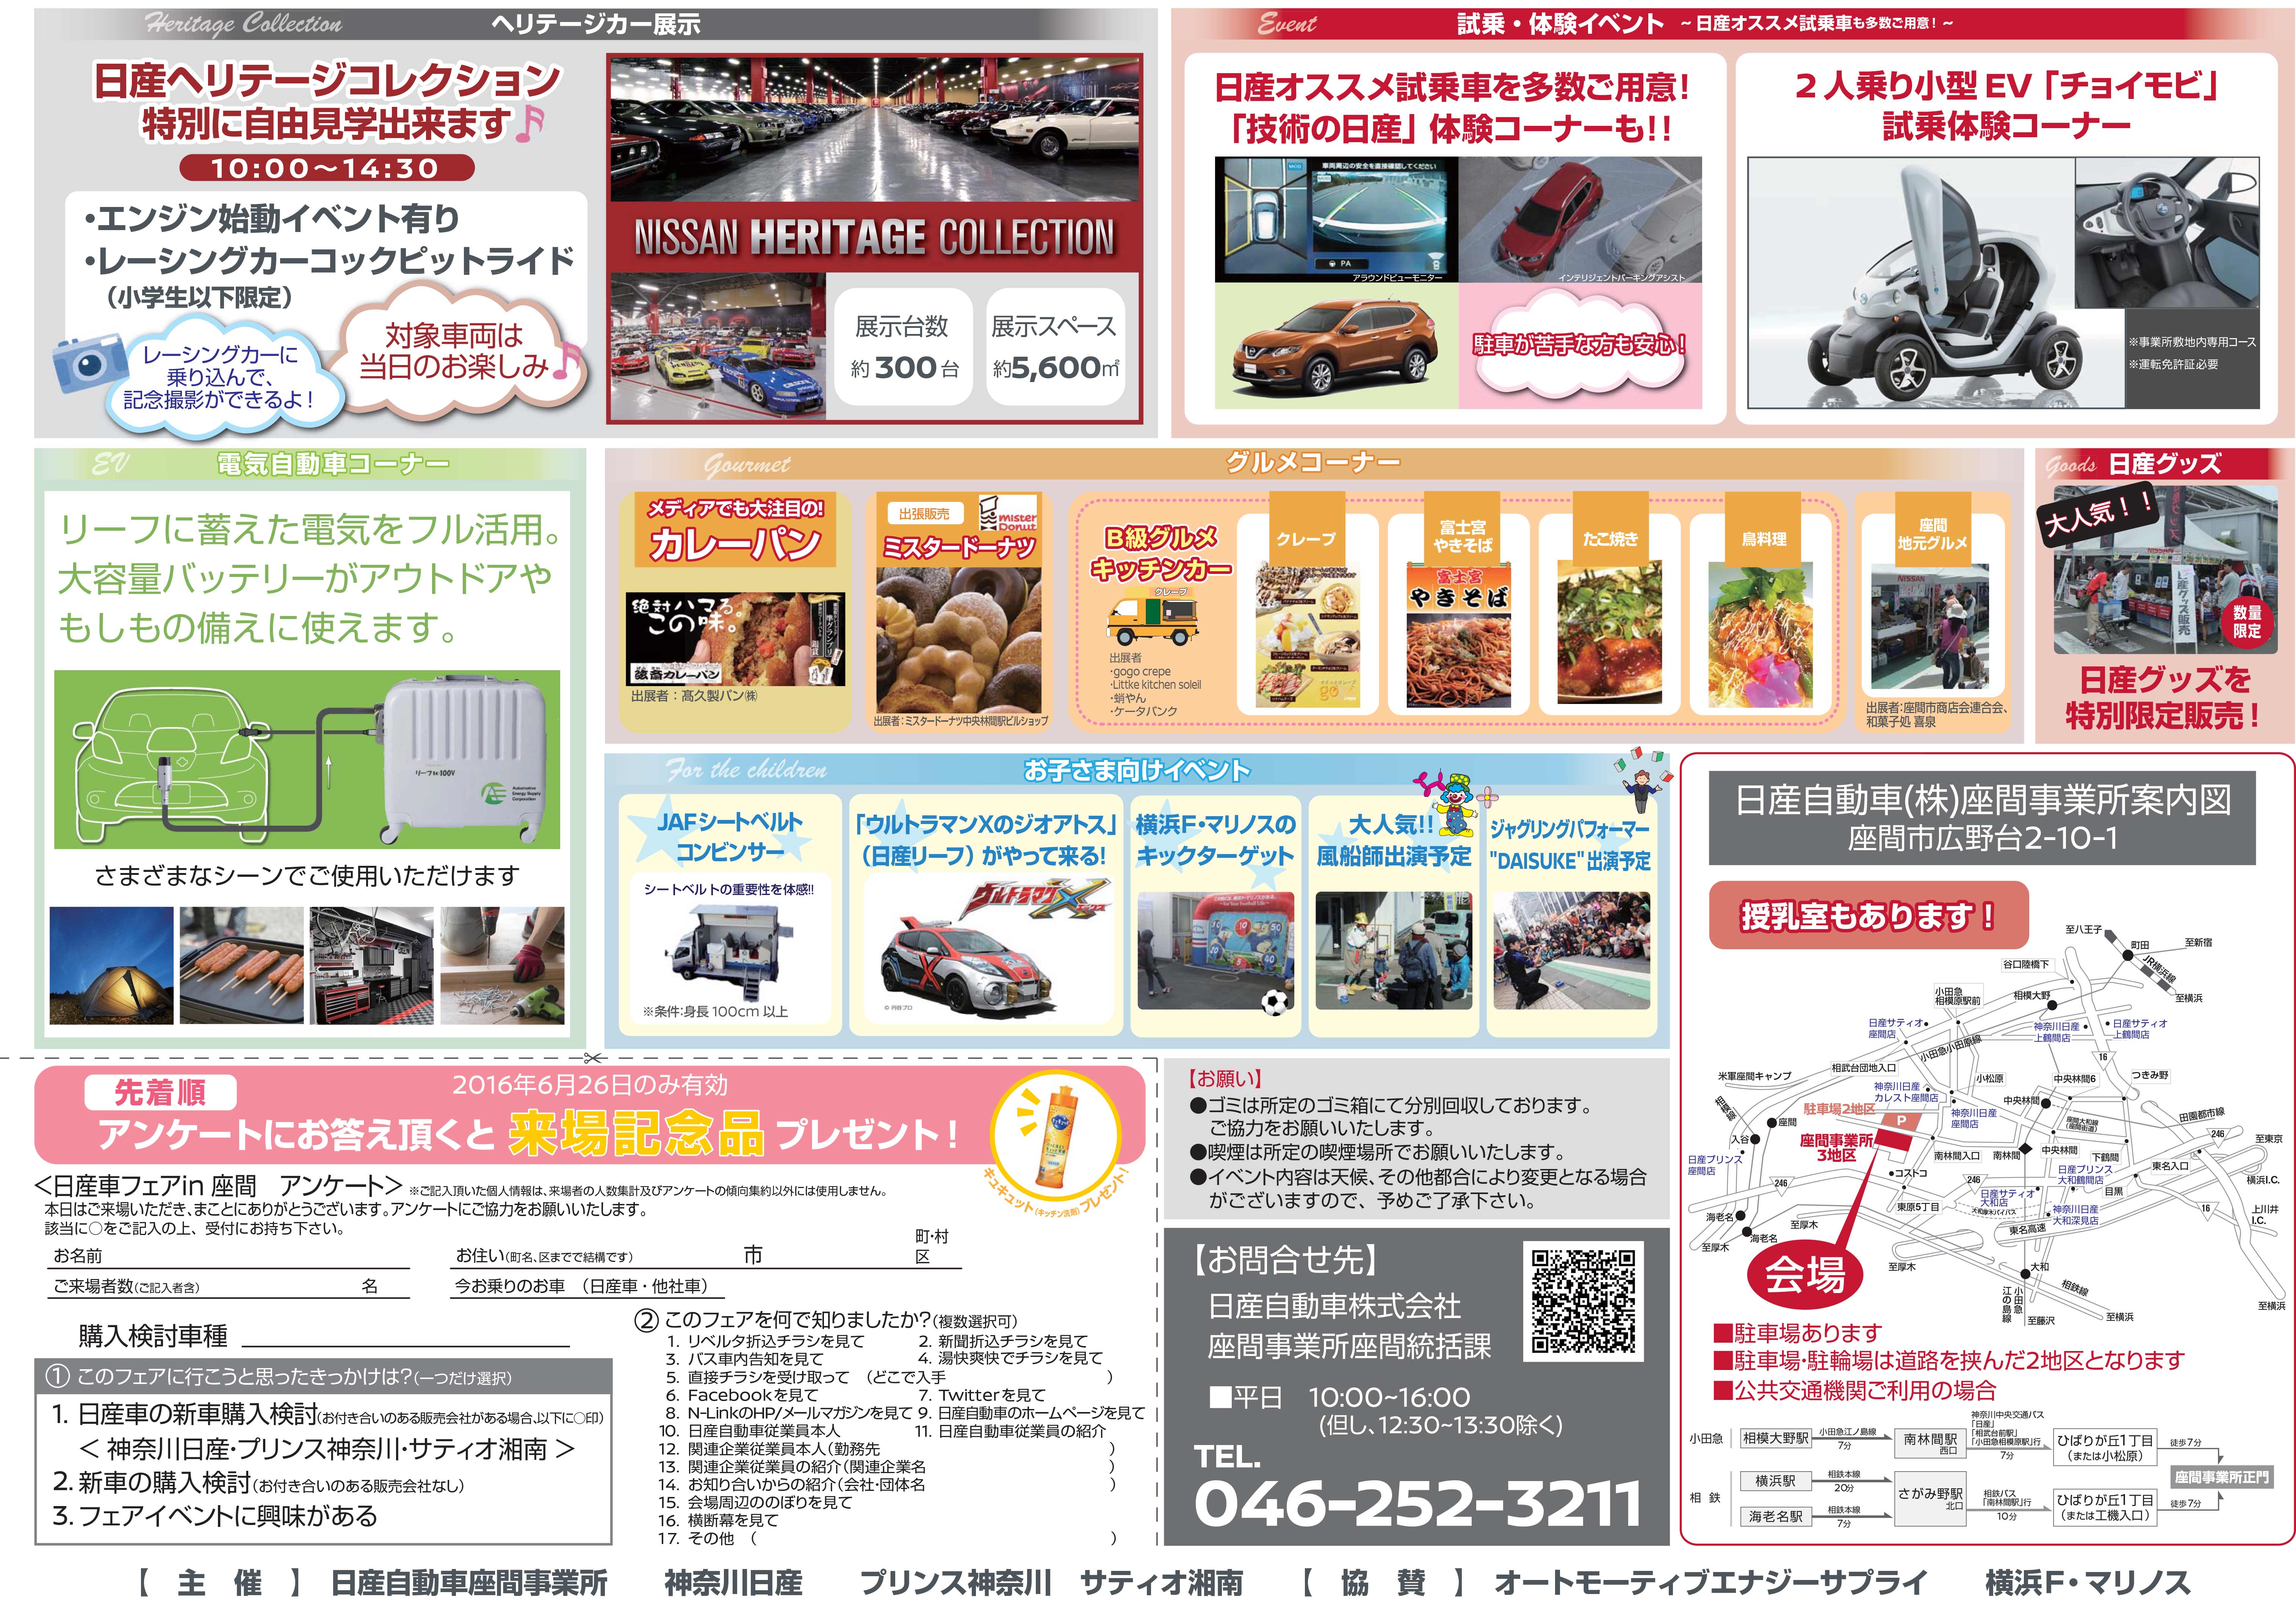 関東地域 イベント情報 6月26日 日 座間事業所にて 日産車フェア In 座間 を開催 Newscast